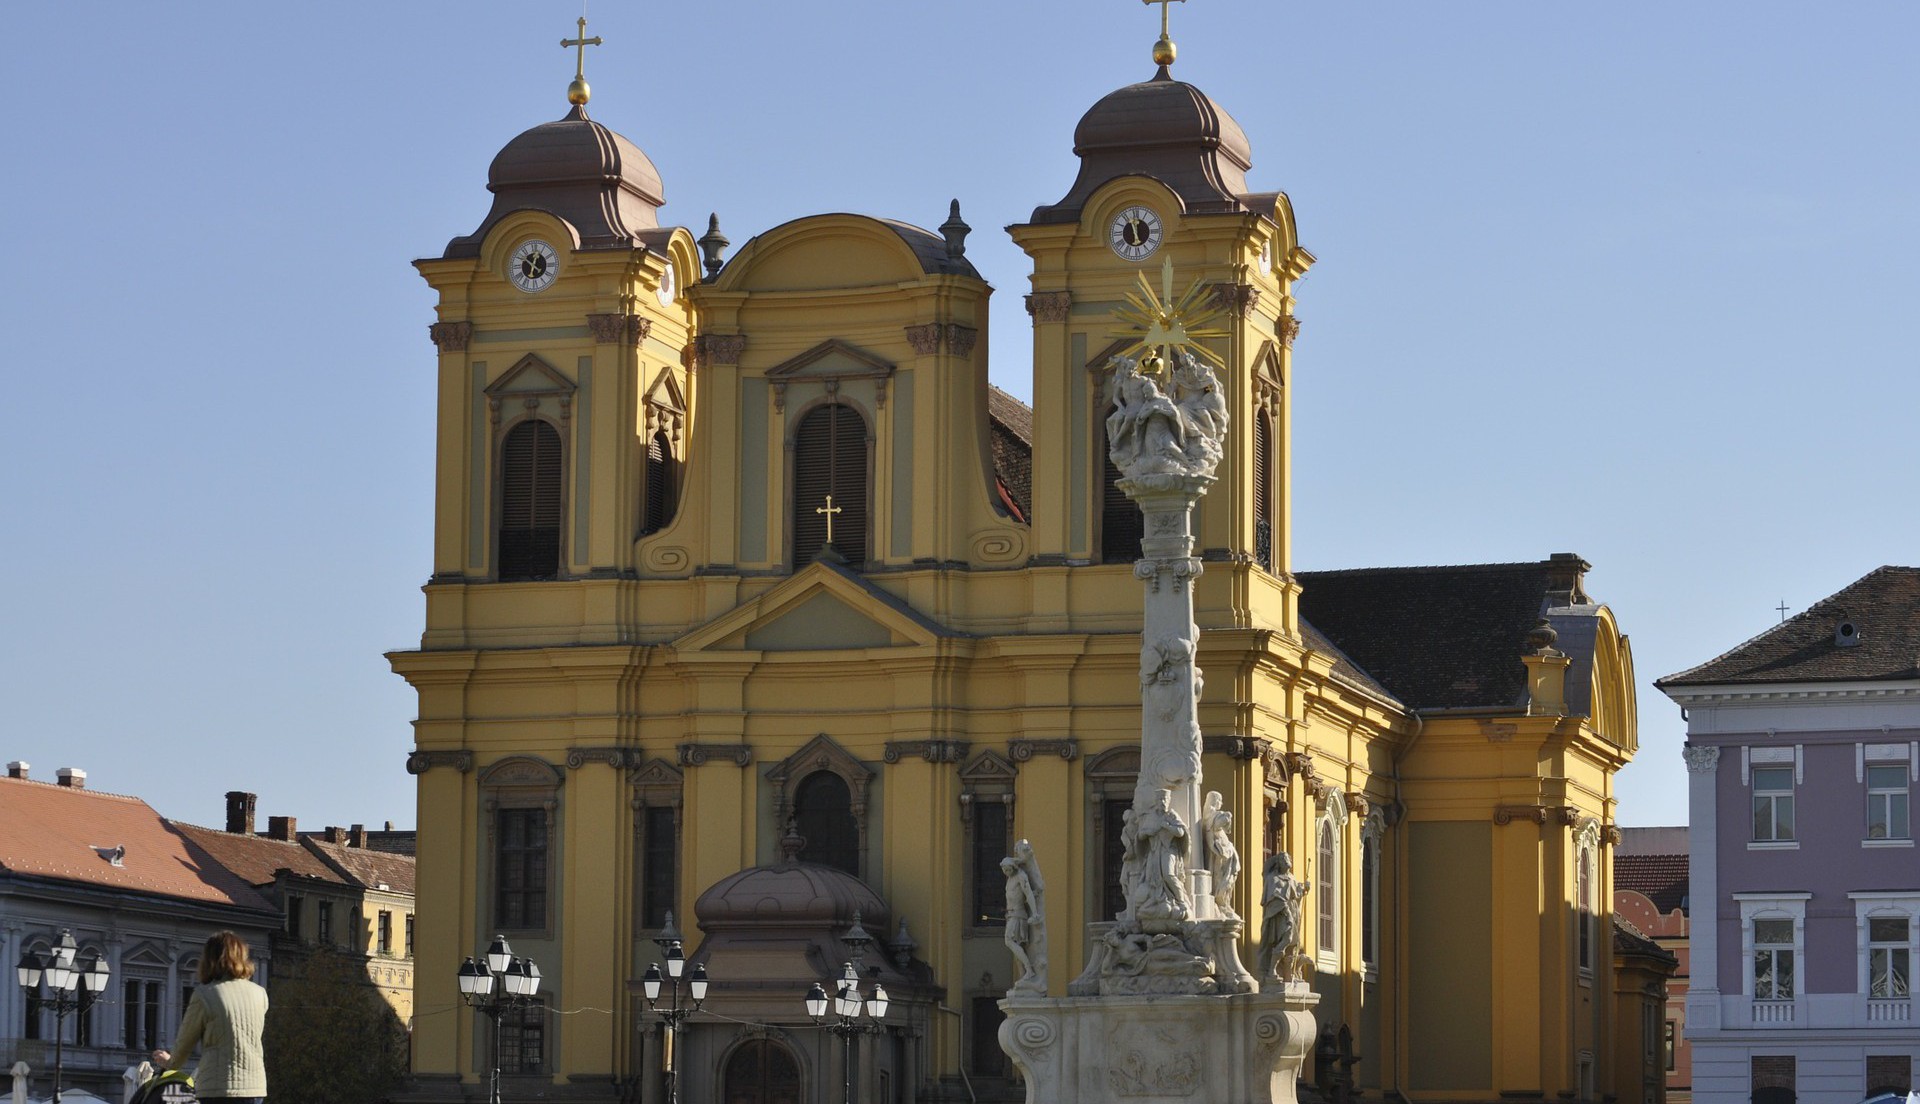 4,8 milioane de euro pentru restaurarea Domului din Piața Unirii din Timișoara